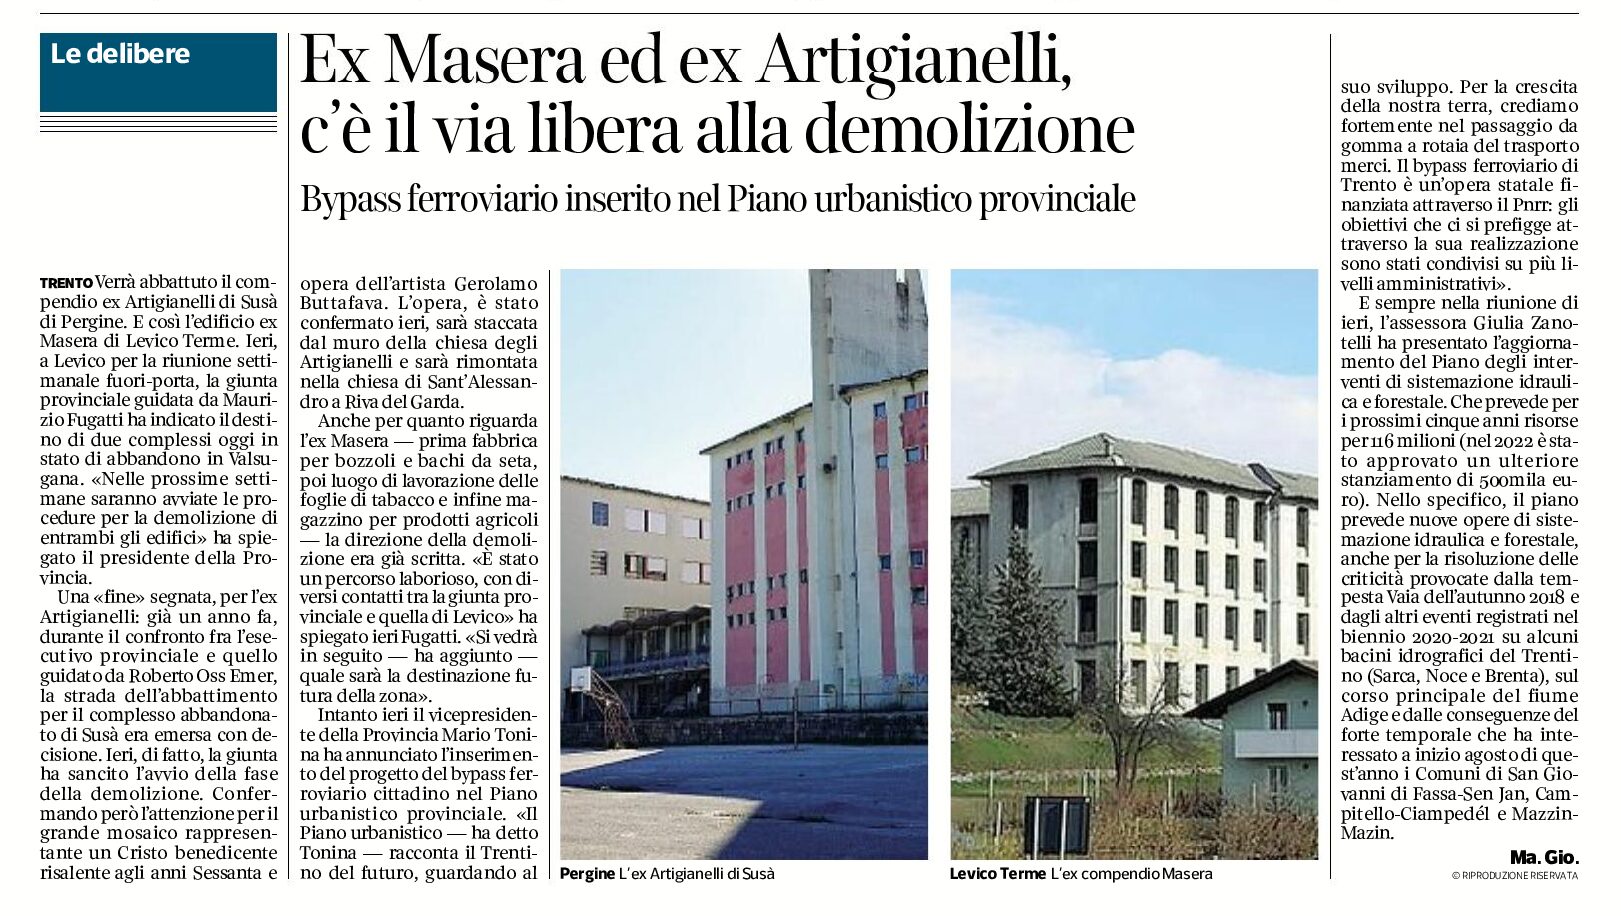 Ex Masera ed ex Artigianelli, via libera alla demolizione